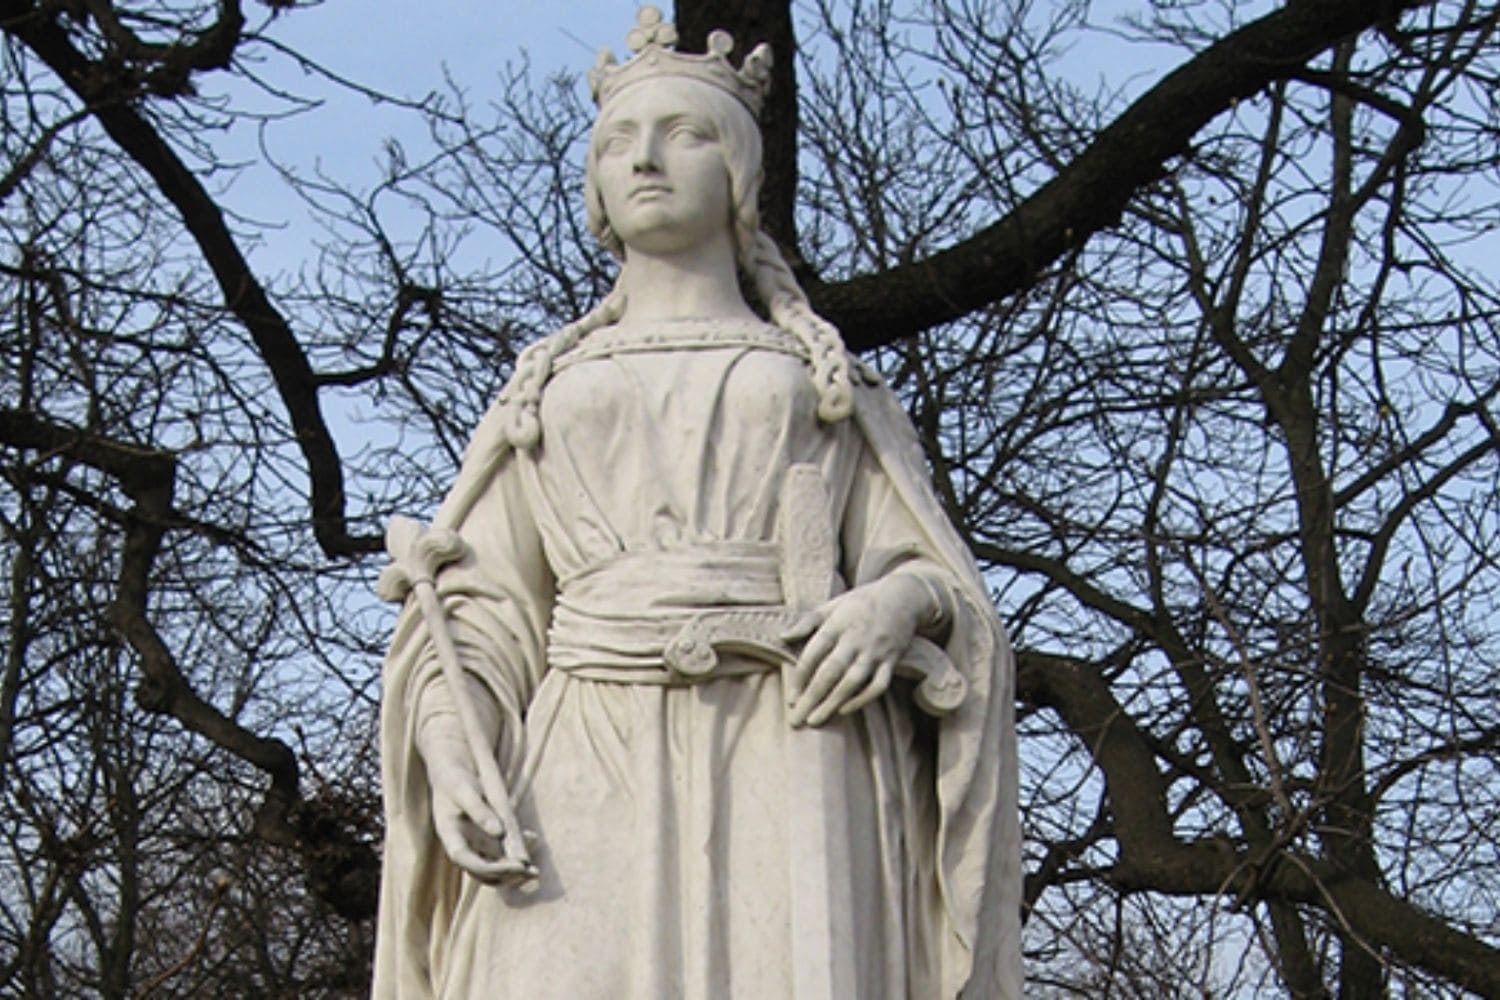 Statue of forgotten queen of 1066